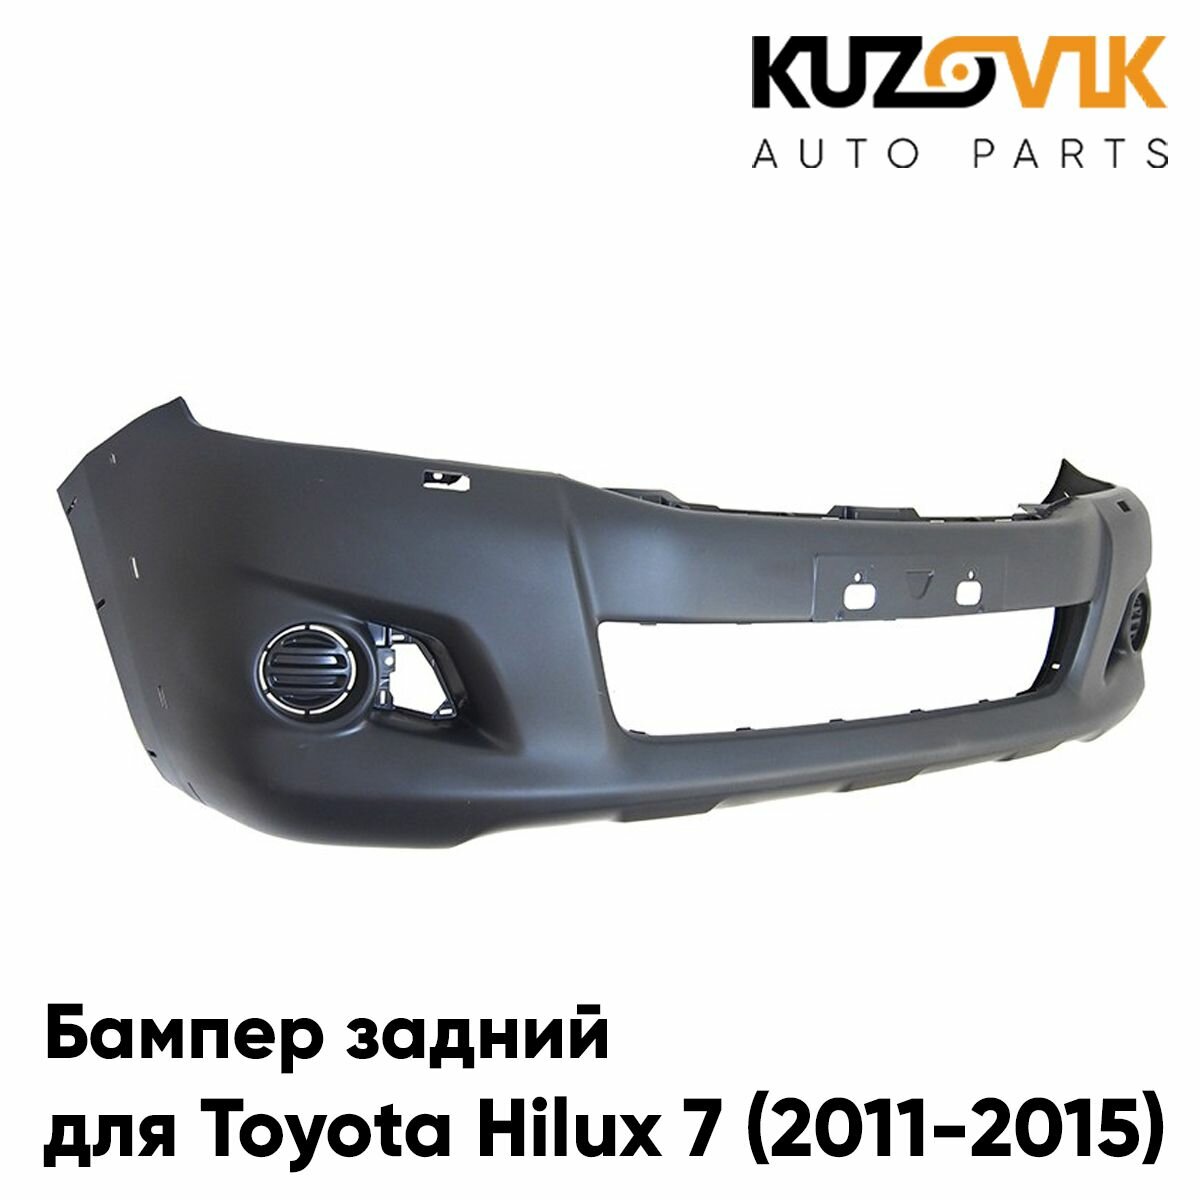 Бампер передний для Тойота Хайлюкс Toyota Hilux 7 (2011-2015) рестайлинг под расширители